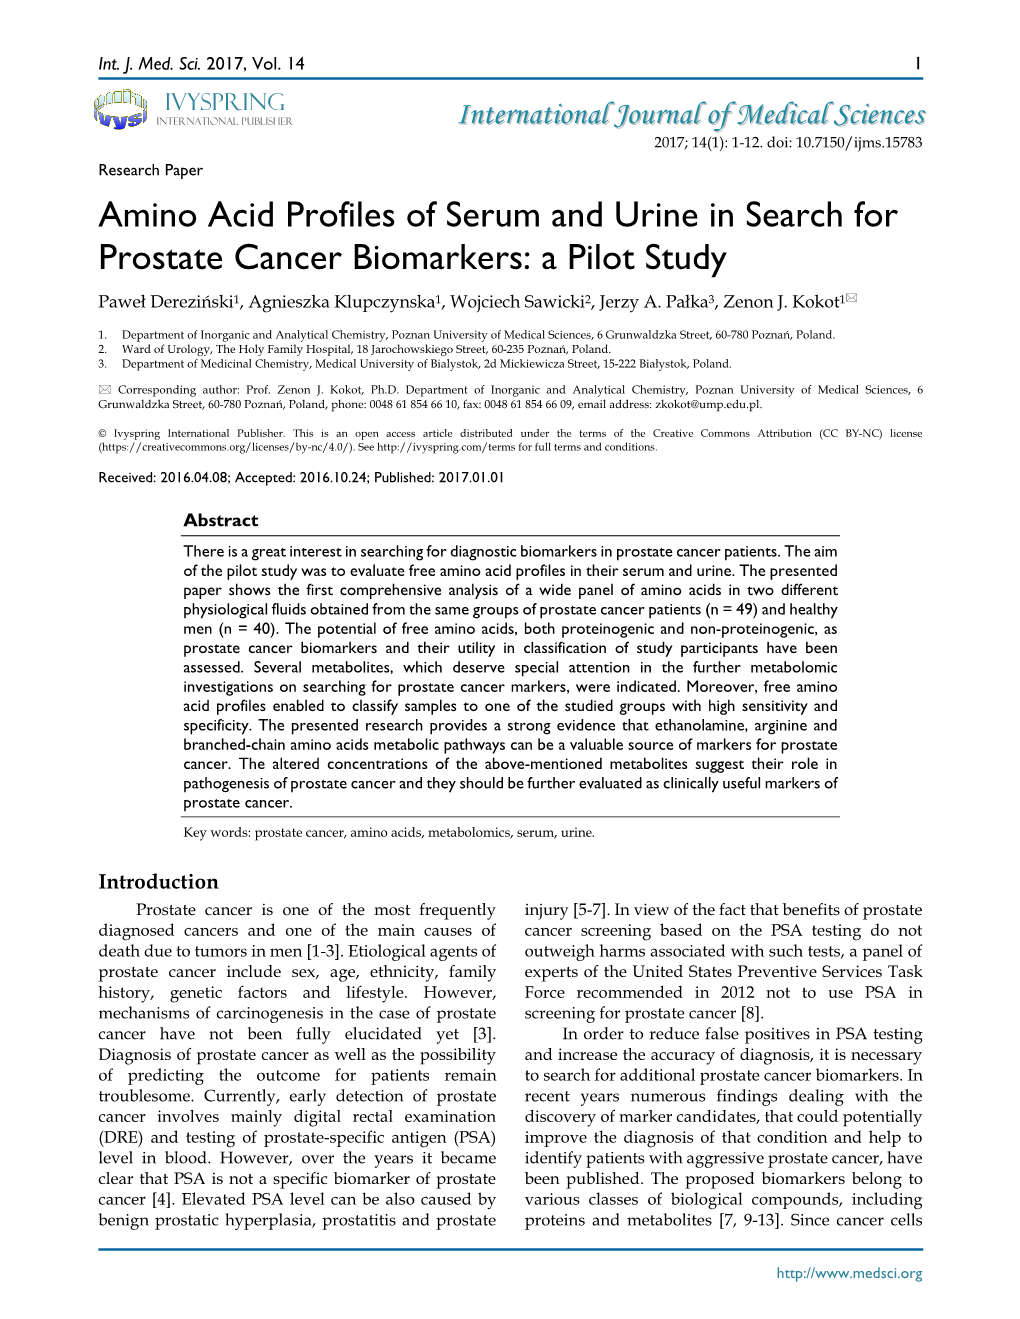 Amino Acid Profiles of Serum and Urine in Search for Prostate Cancer Biomarkers: a Pilot Study Paweł Dereziński1, Agnieszka Klupczynska1, Wojciech Sawicki2, Jerzy A